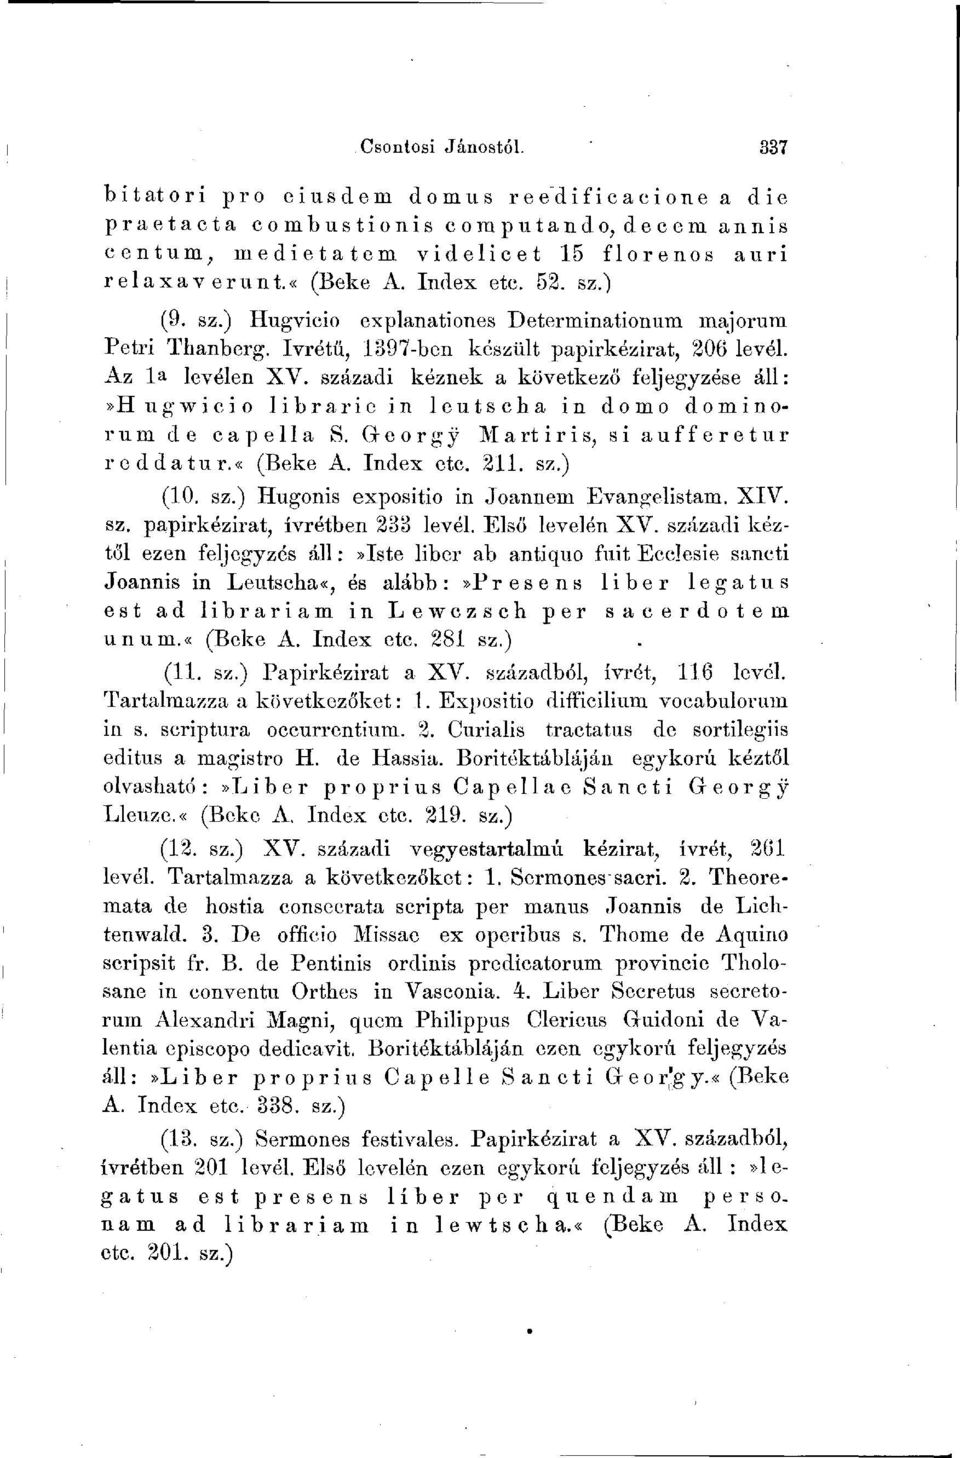 századi kéznek a következő feljegyzése áll:»hugwicio librarie in leutscha in domo dominorum de capella S. Georg y Mart iris, si aufferetur roddatur.«(beke A. Index etc. 211. sz.